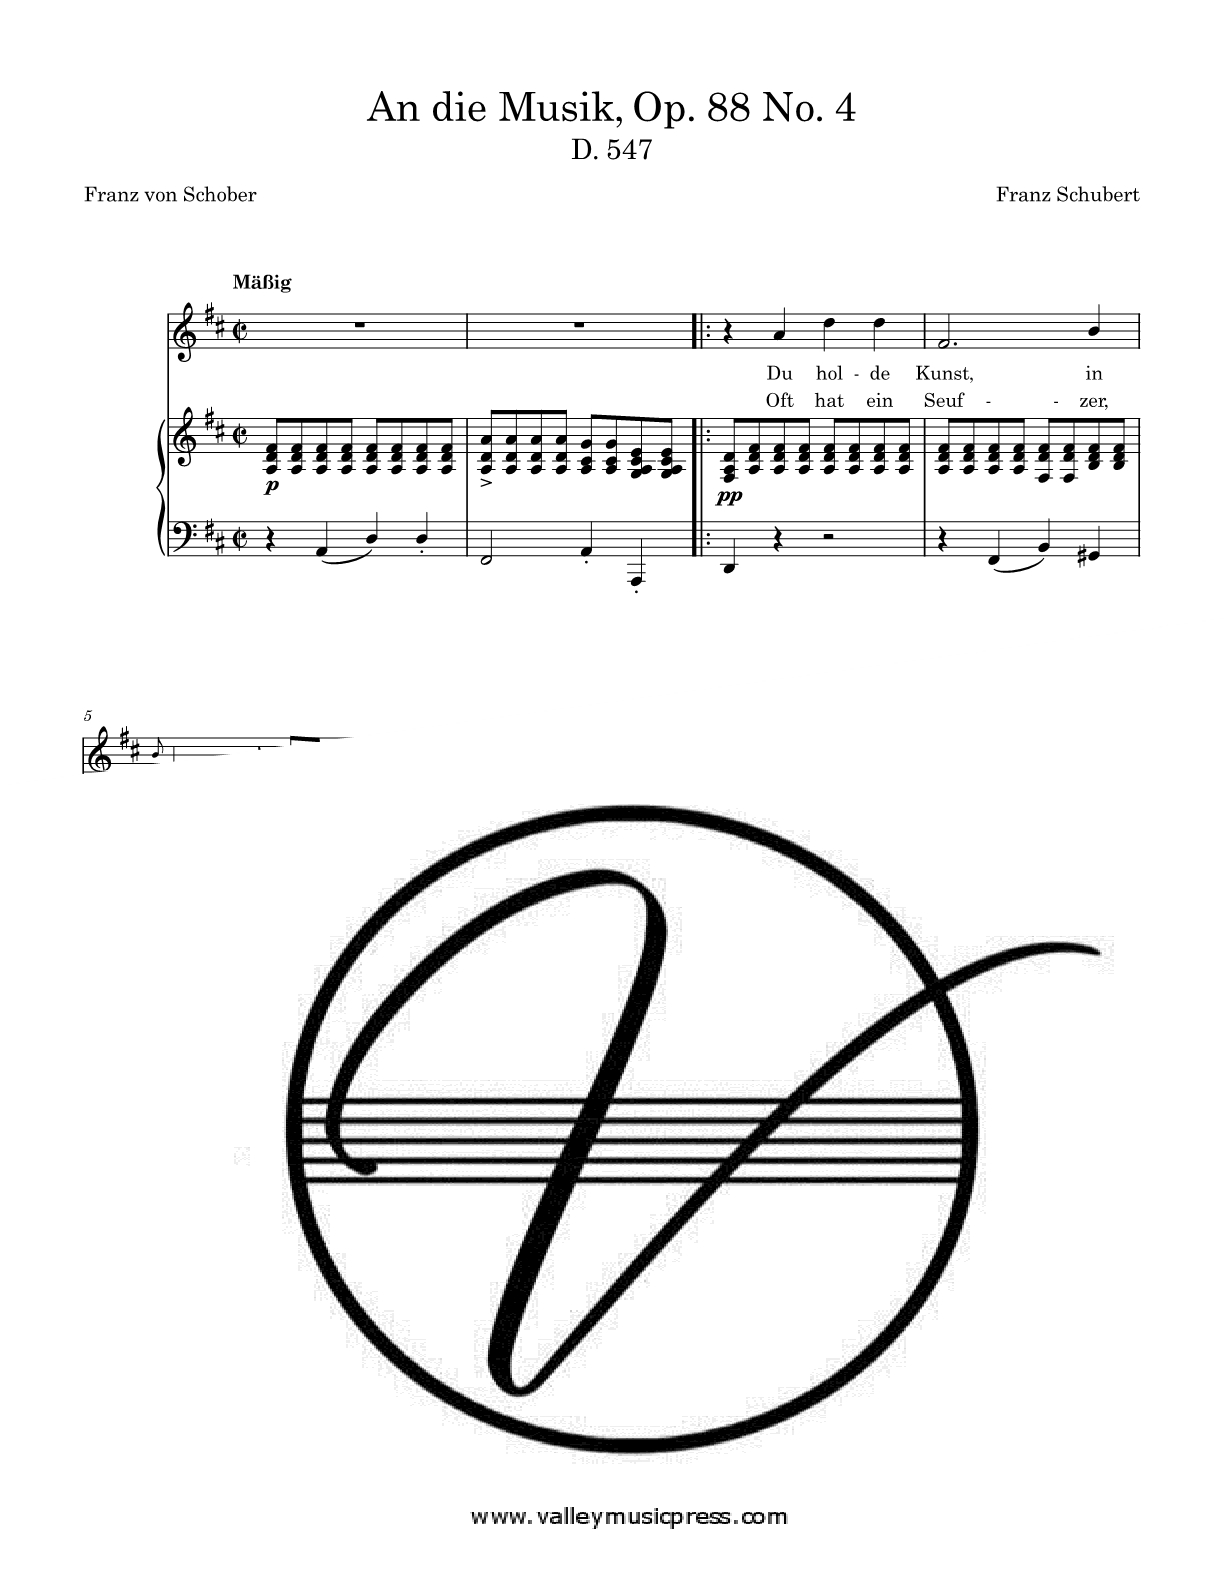 Schubert - An die Musik Op. 88 No. 4 D. 547 (Voice) - Click Image to Close